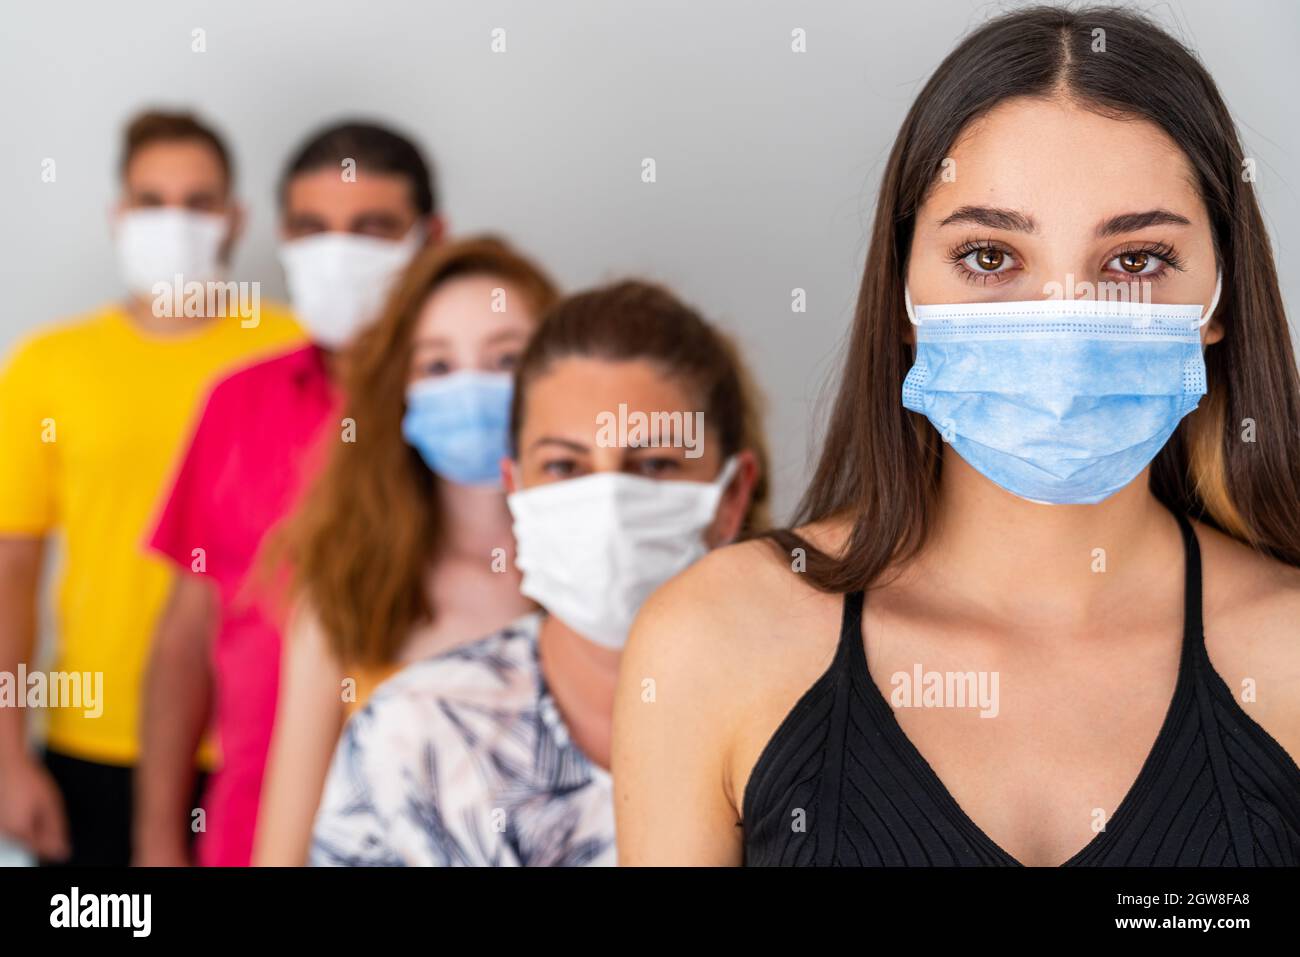 Groupe de personnes en attente avec masque facial protecteur à distance. Concept de pandémie et de soins de santé. Photo de haute qualité Banque D'Images